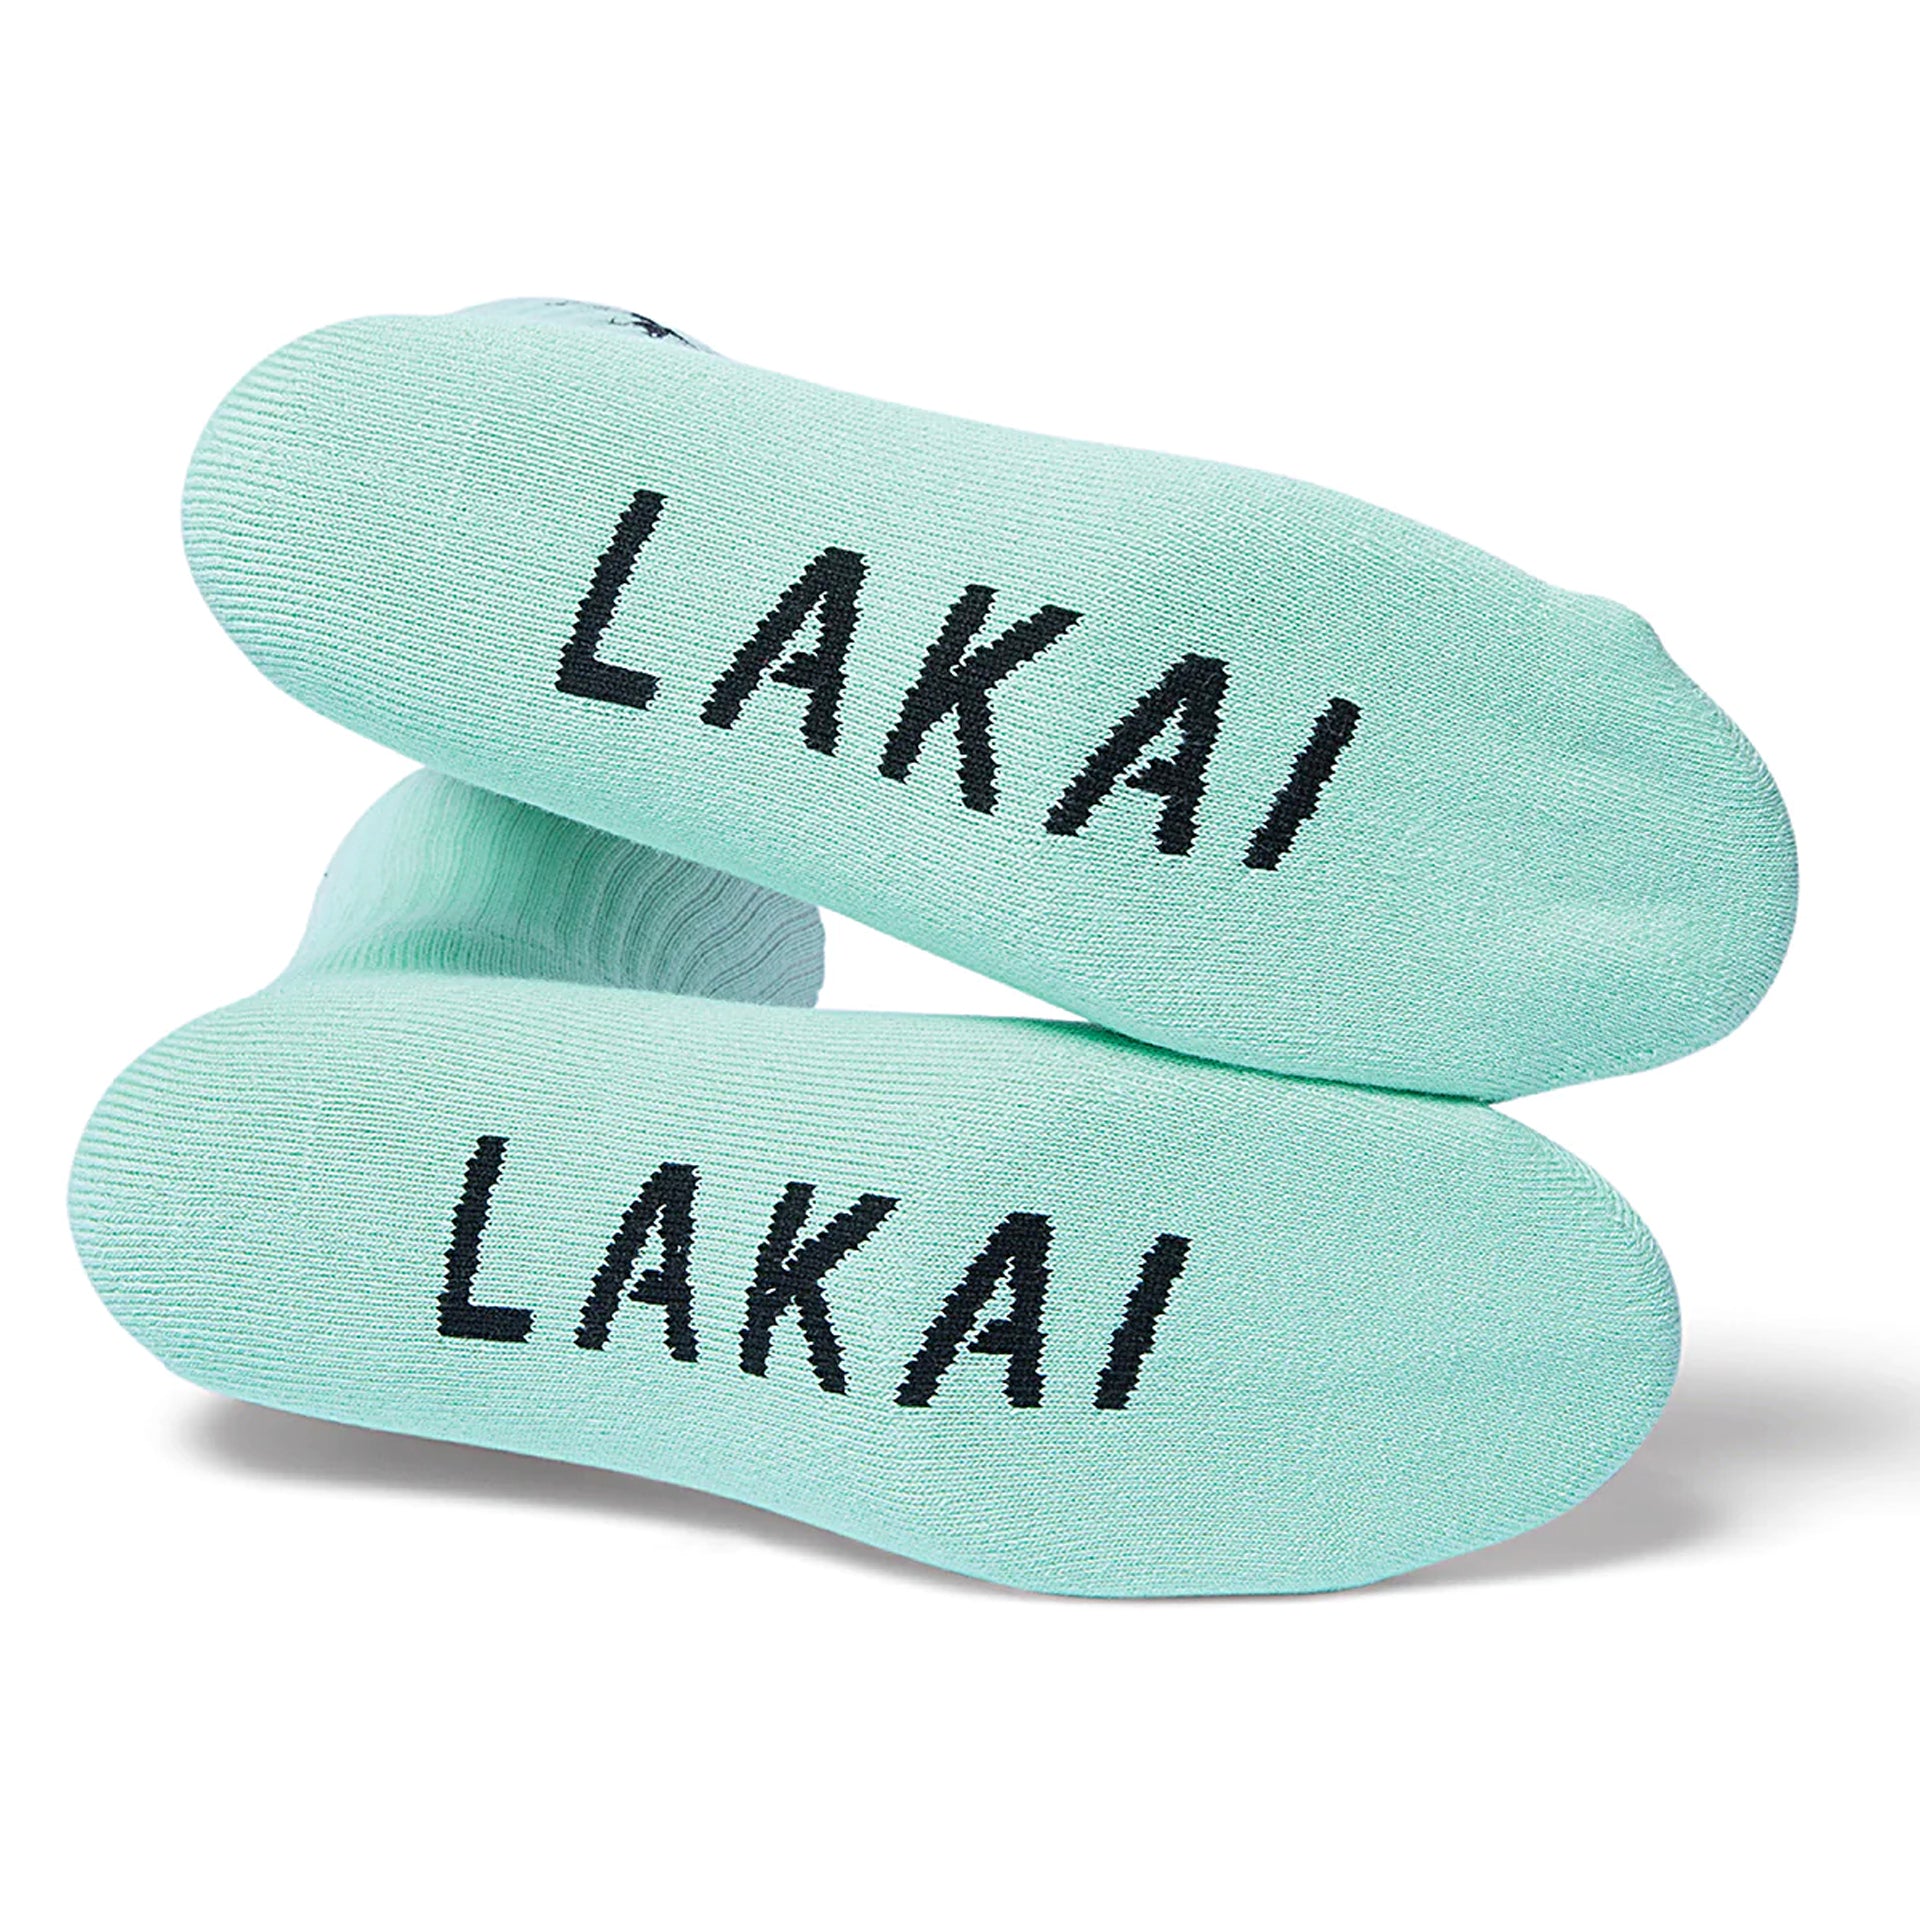 Lakai - Flare Face Crew Socks - Mint - Prime Delux Store